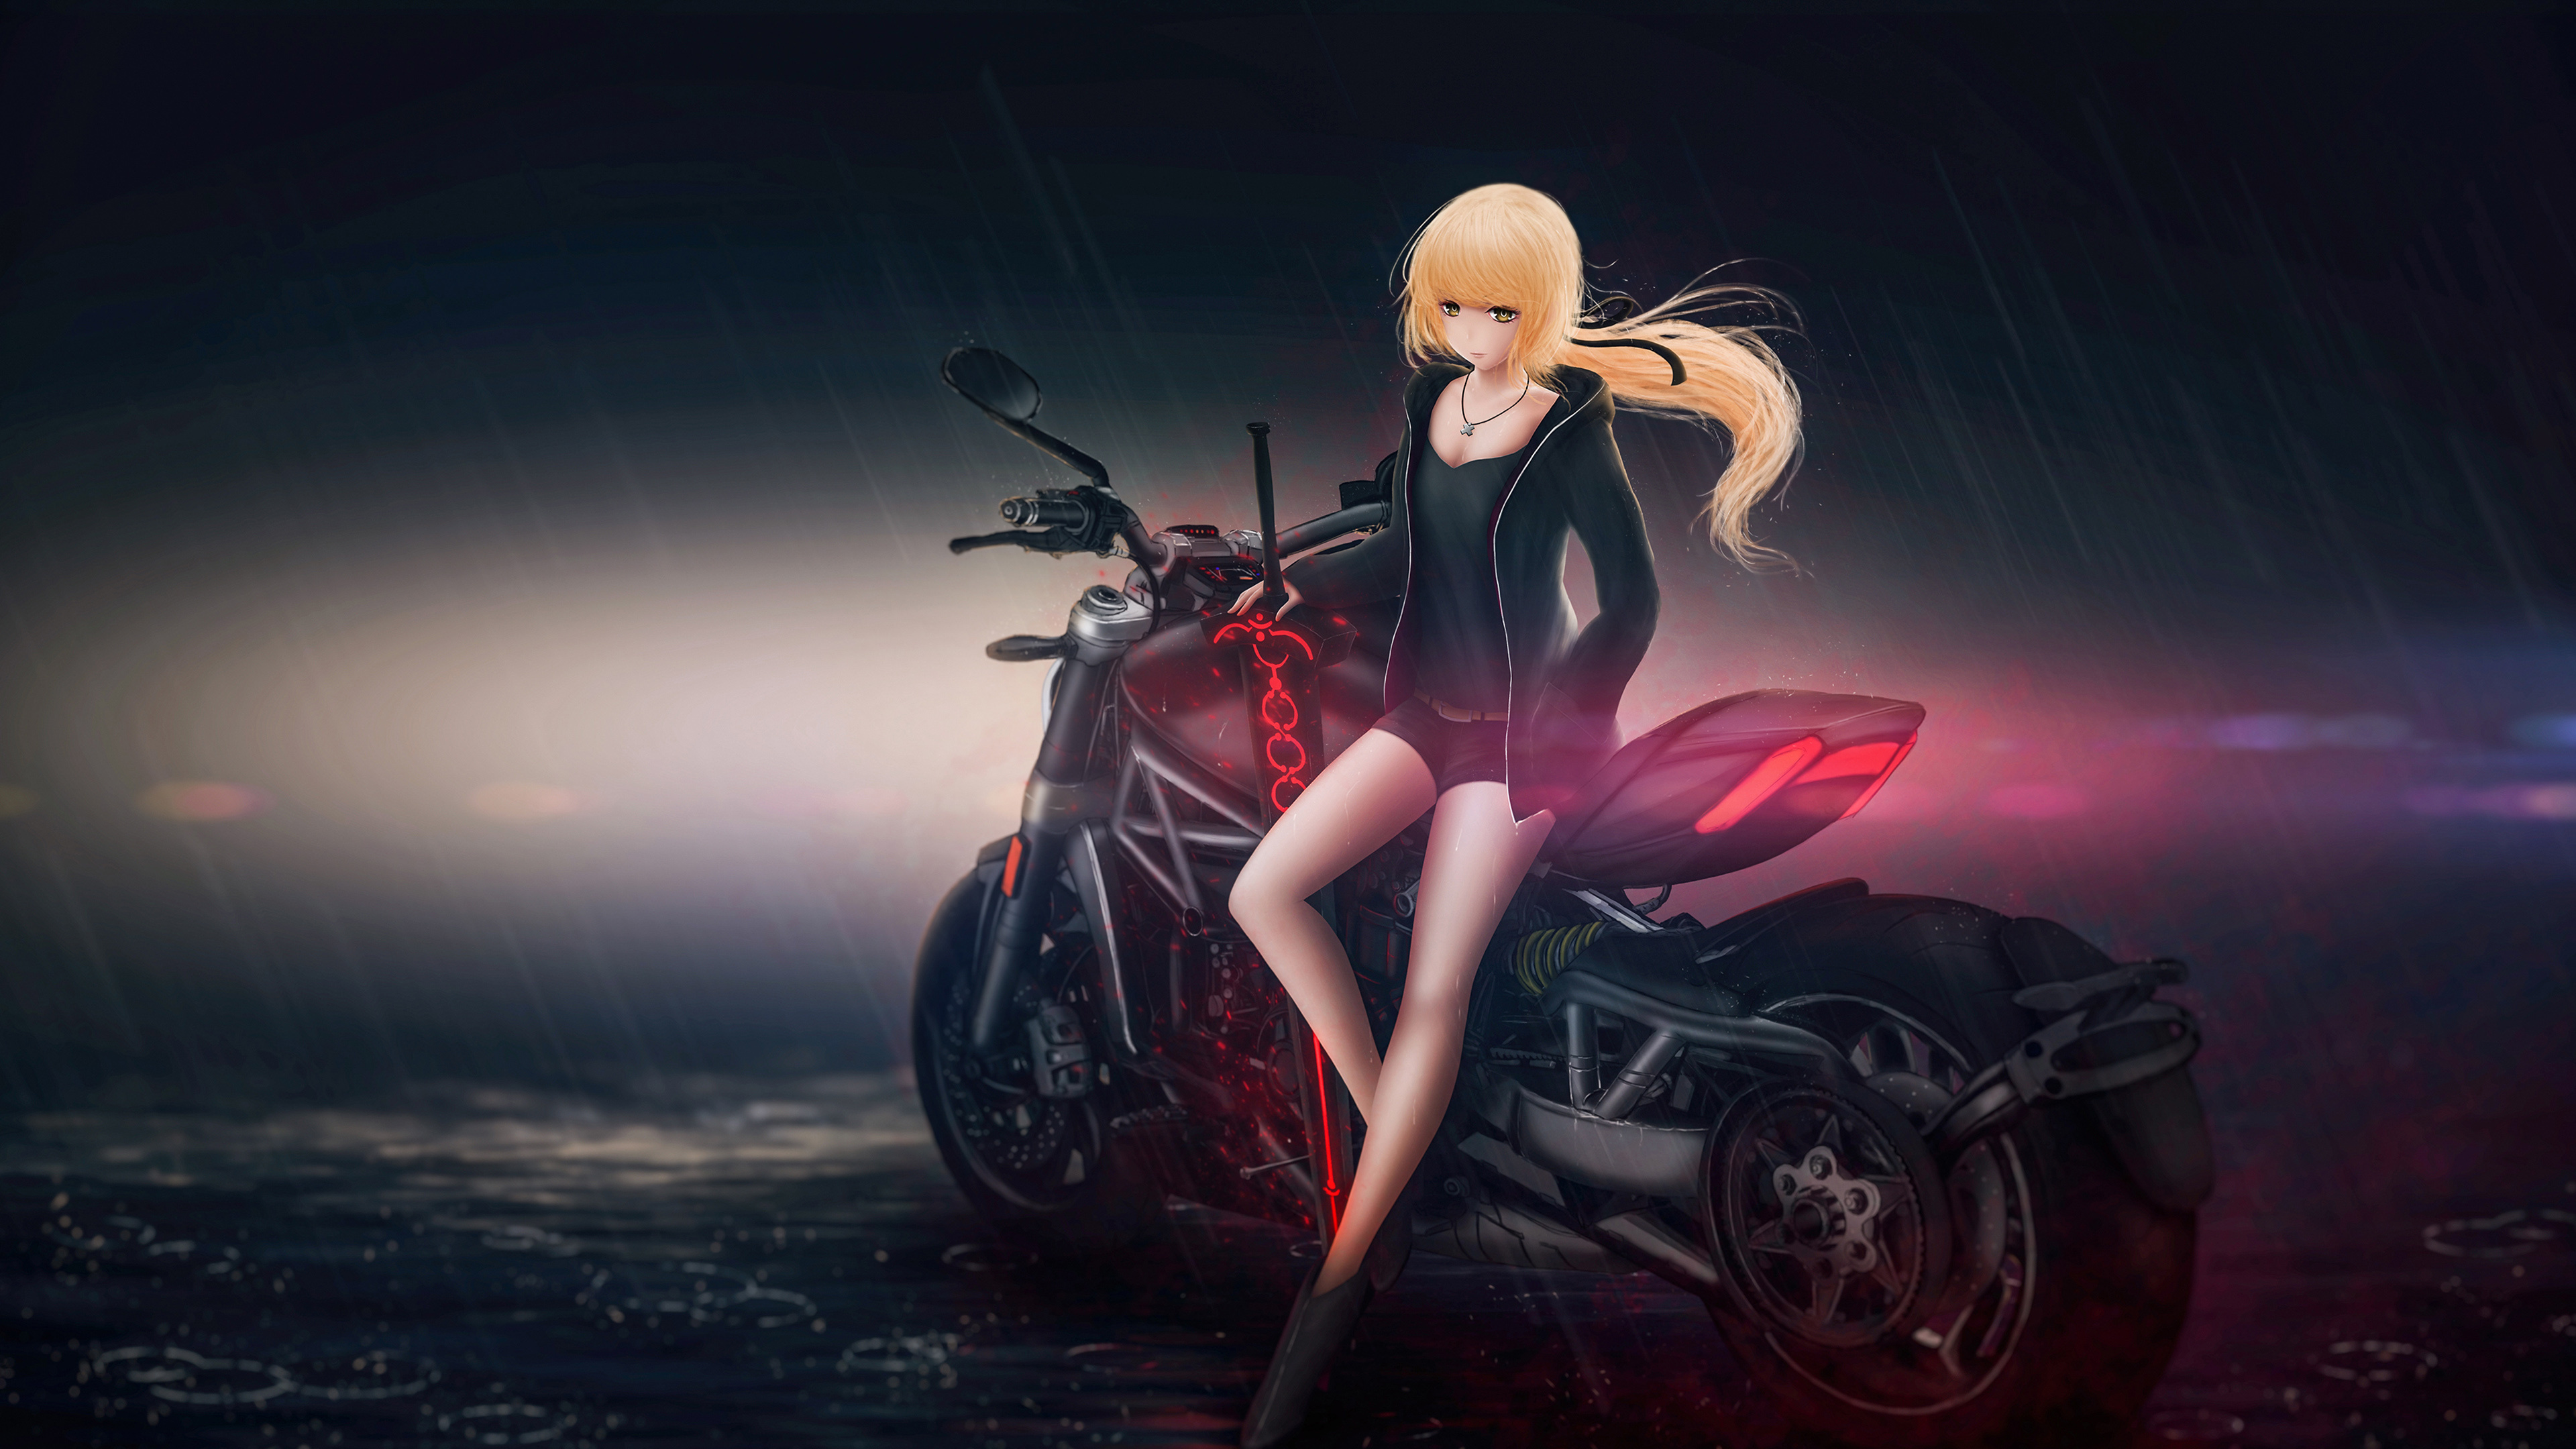 Femme en Noir et Rouge, Personnage D'anime de Vélo de Sport. Wallpaper in 3840x2160 Resolution